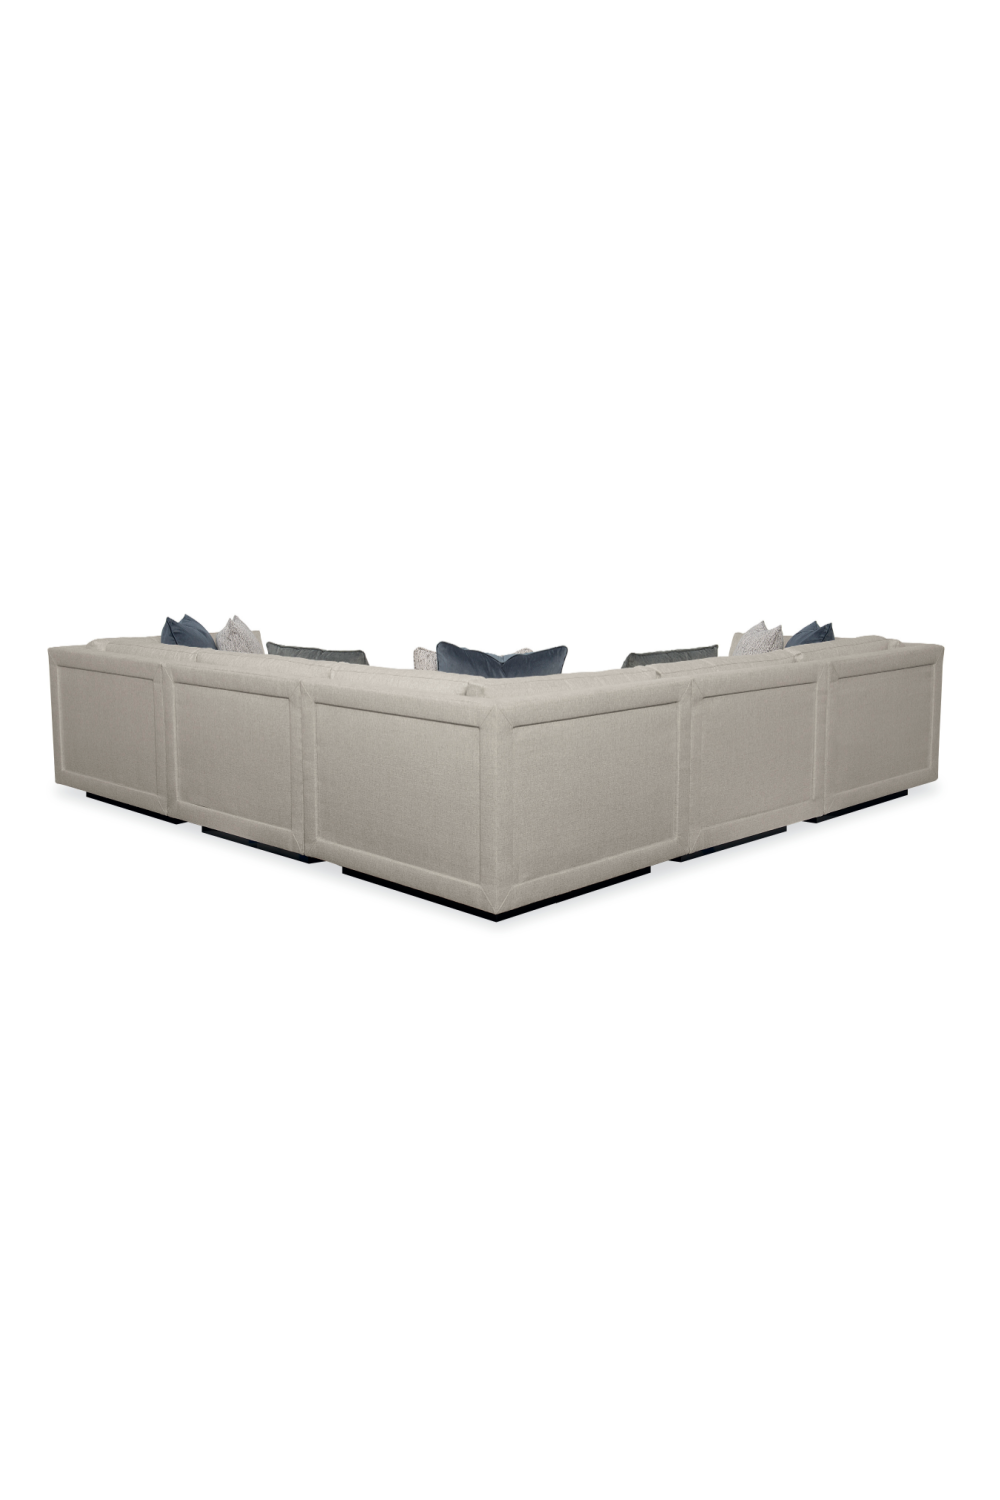 Neutral-Toned Sectional Sofa | Caracole Fusion | Oroa.com